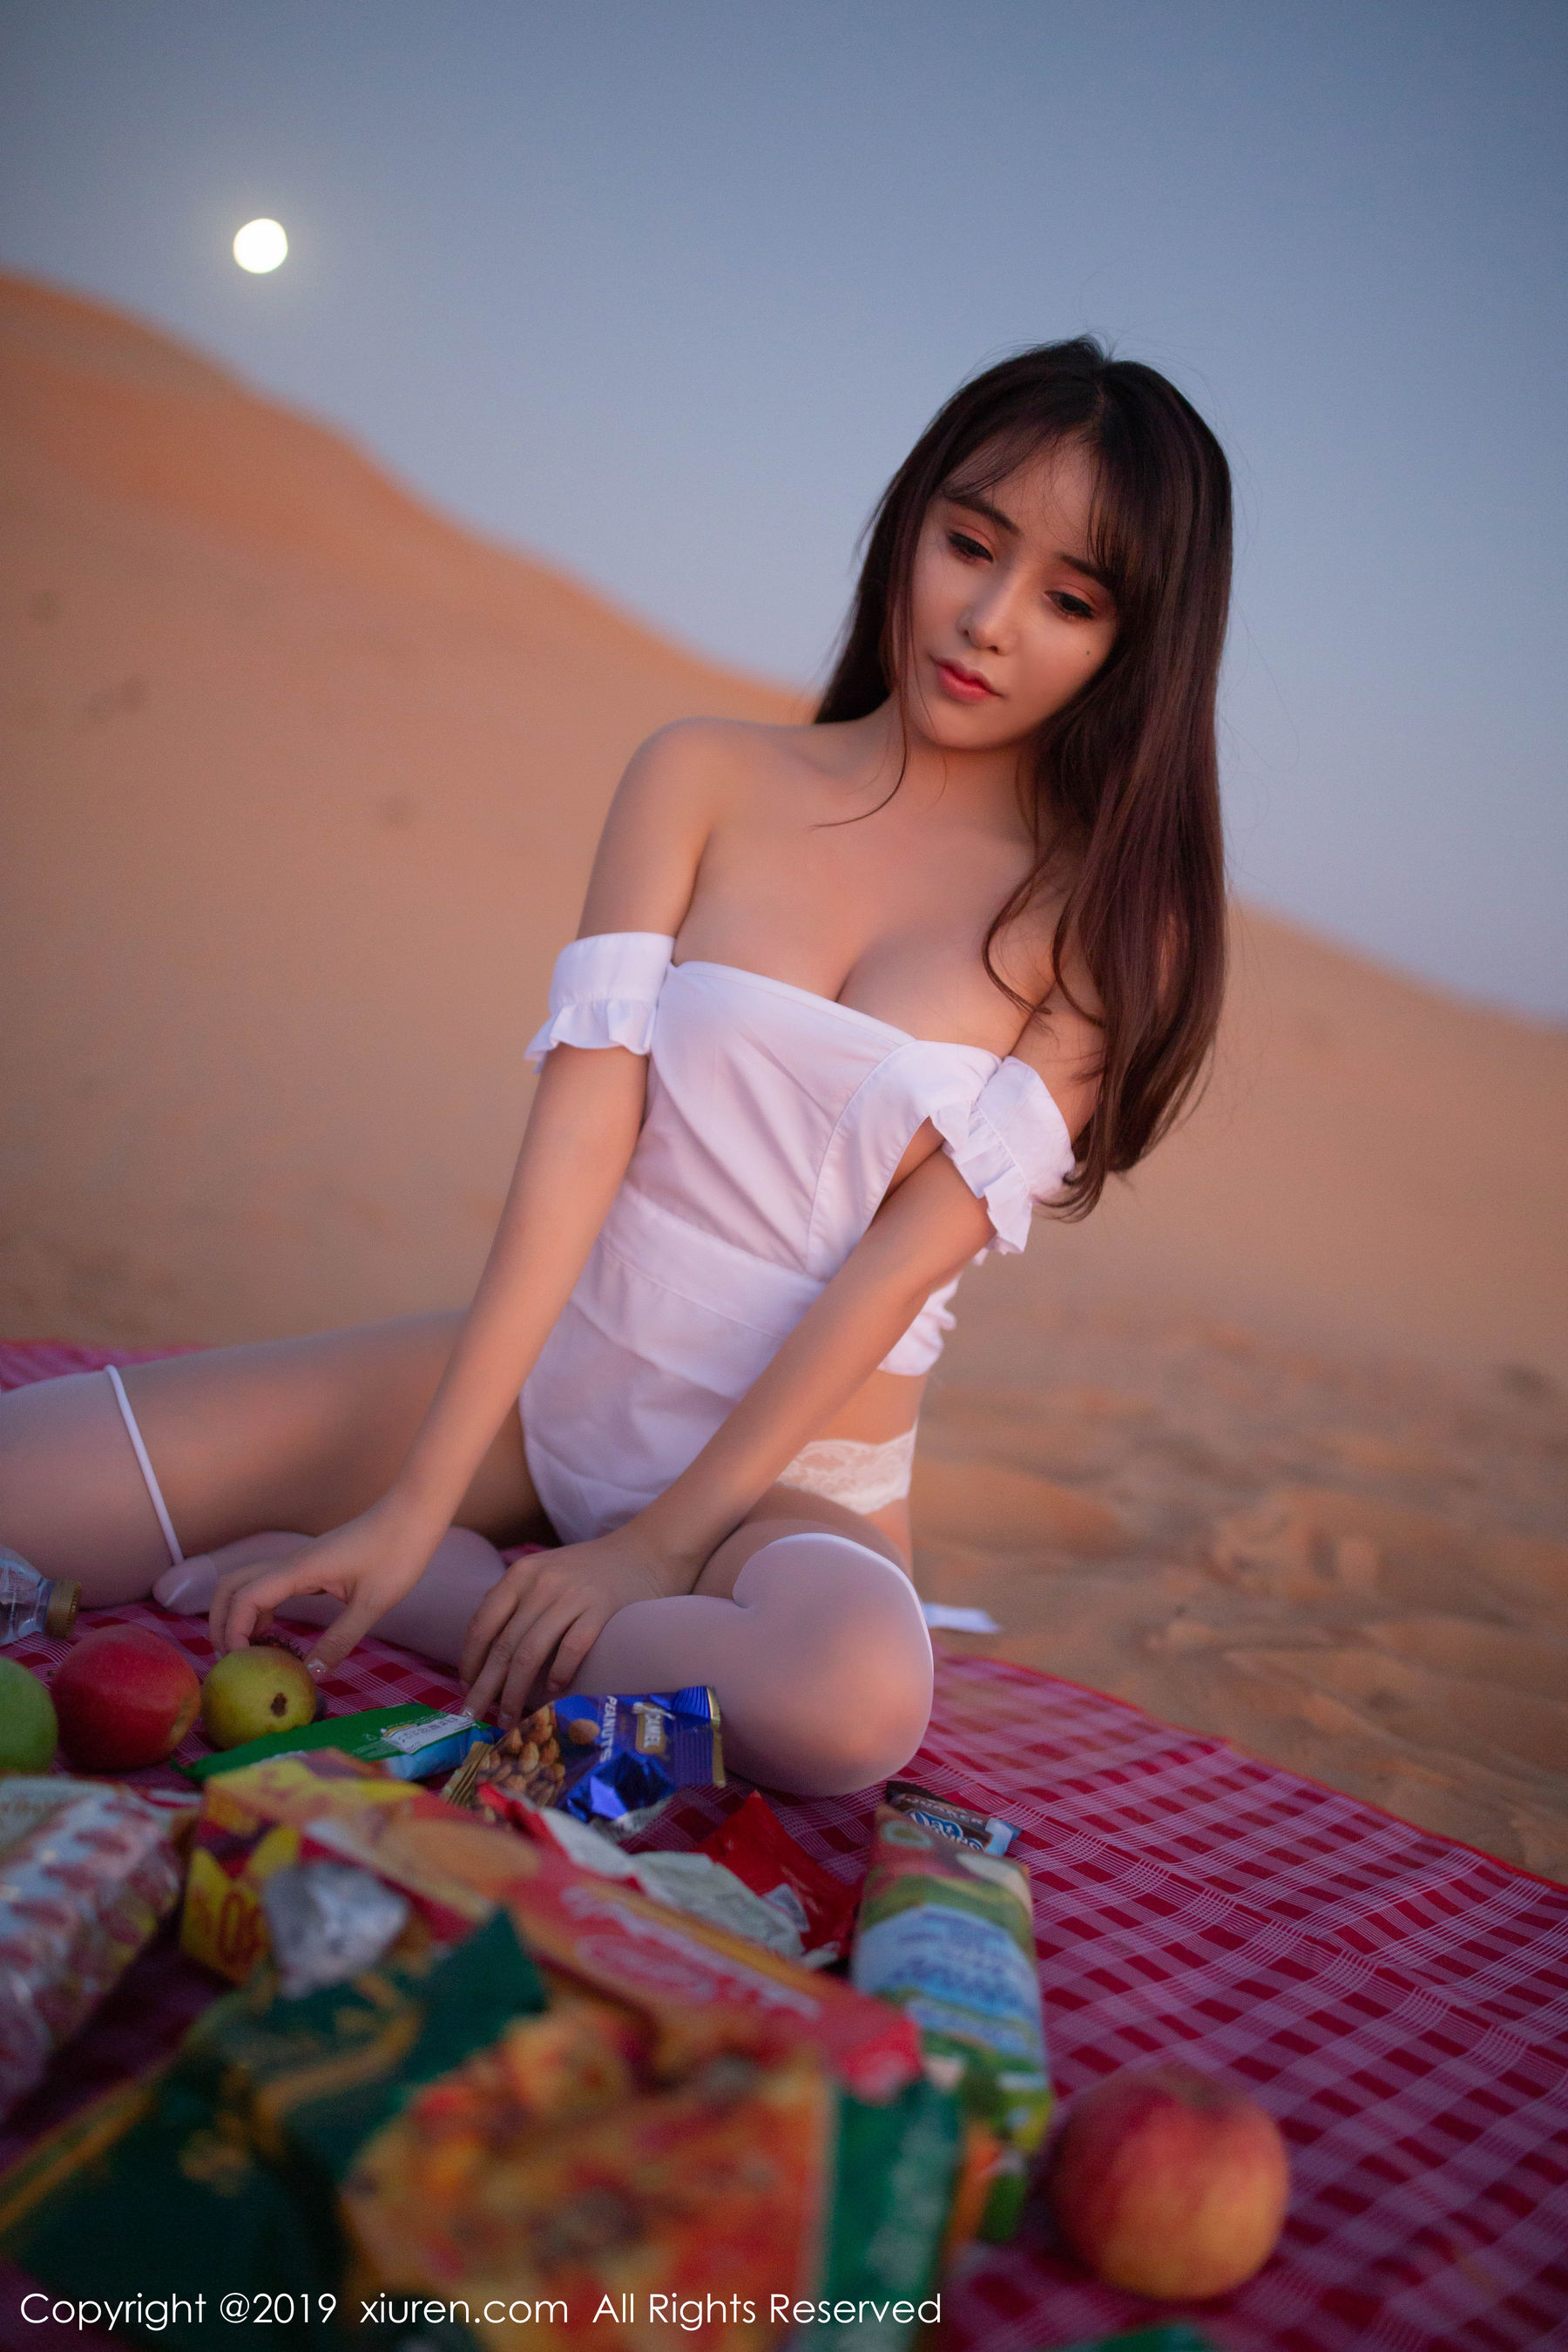 Tao Xile_lele "Серии съемок на открытом воздухе для пикника в примитивной пустыне" [秀 人 XIUREN] № 1825 Страница 50 No.735fb6